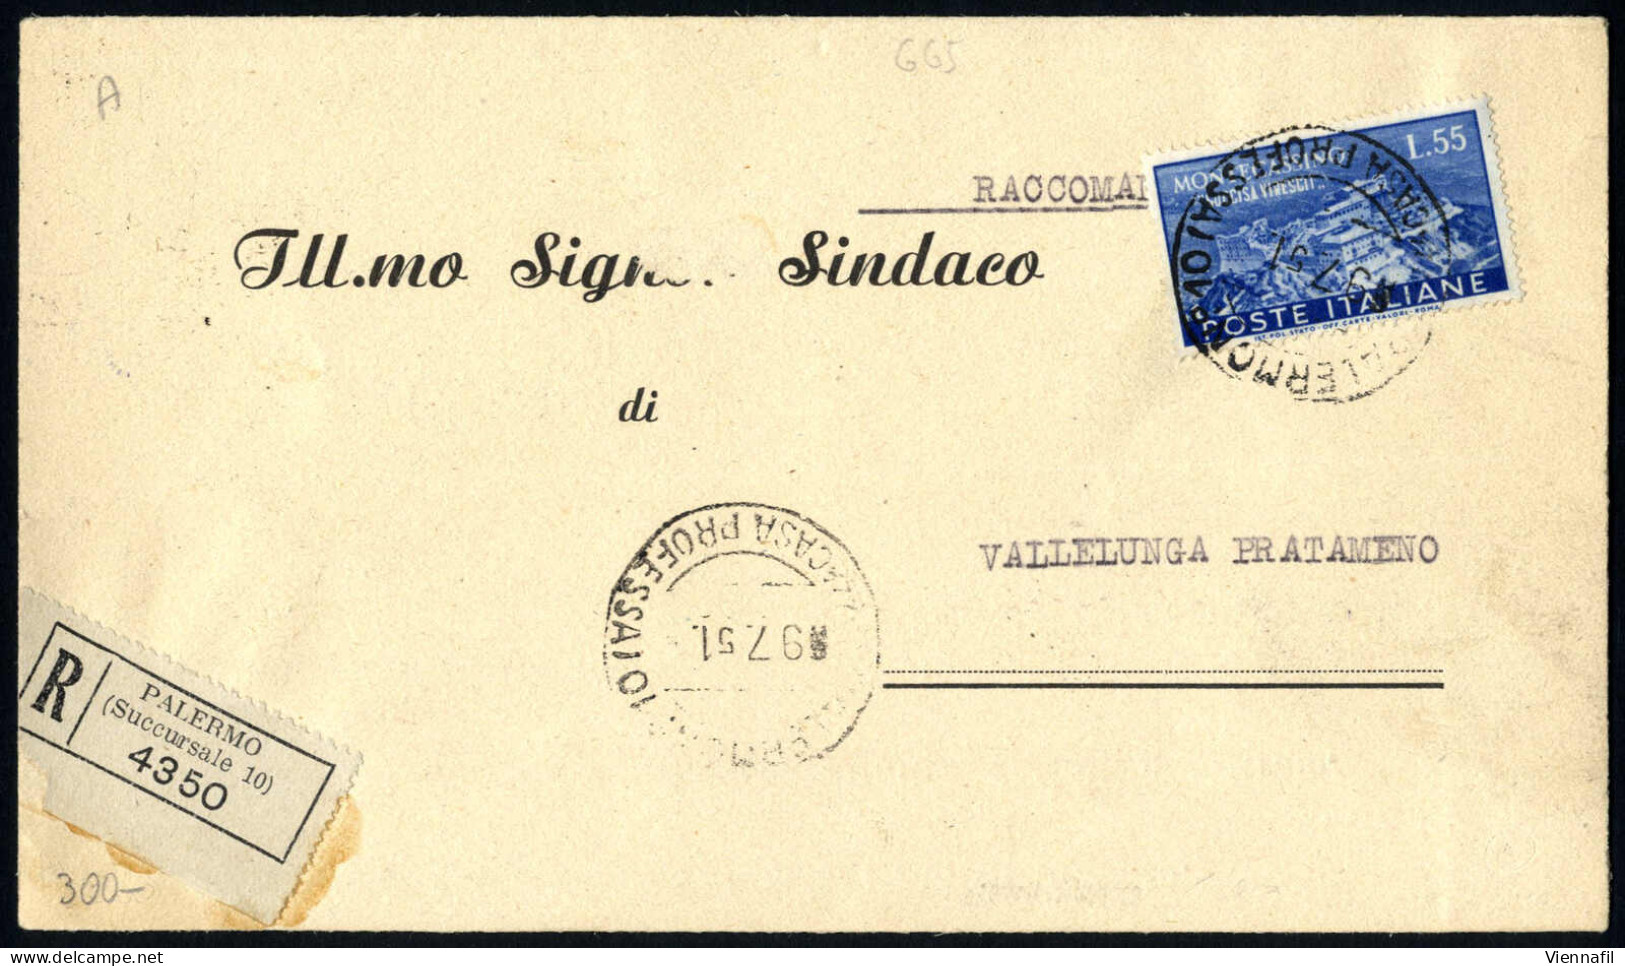 cover 1946/2000, splendida collezione di oltre 1500 documenti postali con usi singoli della repubblica in 19 album con m